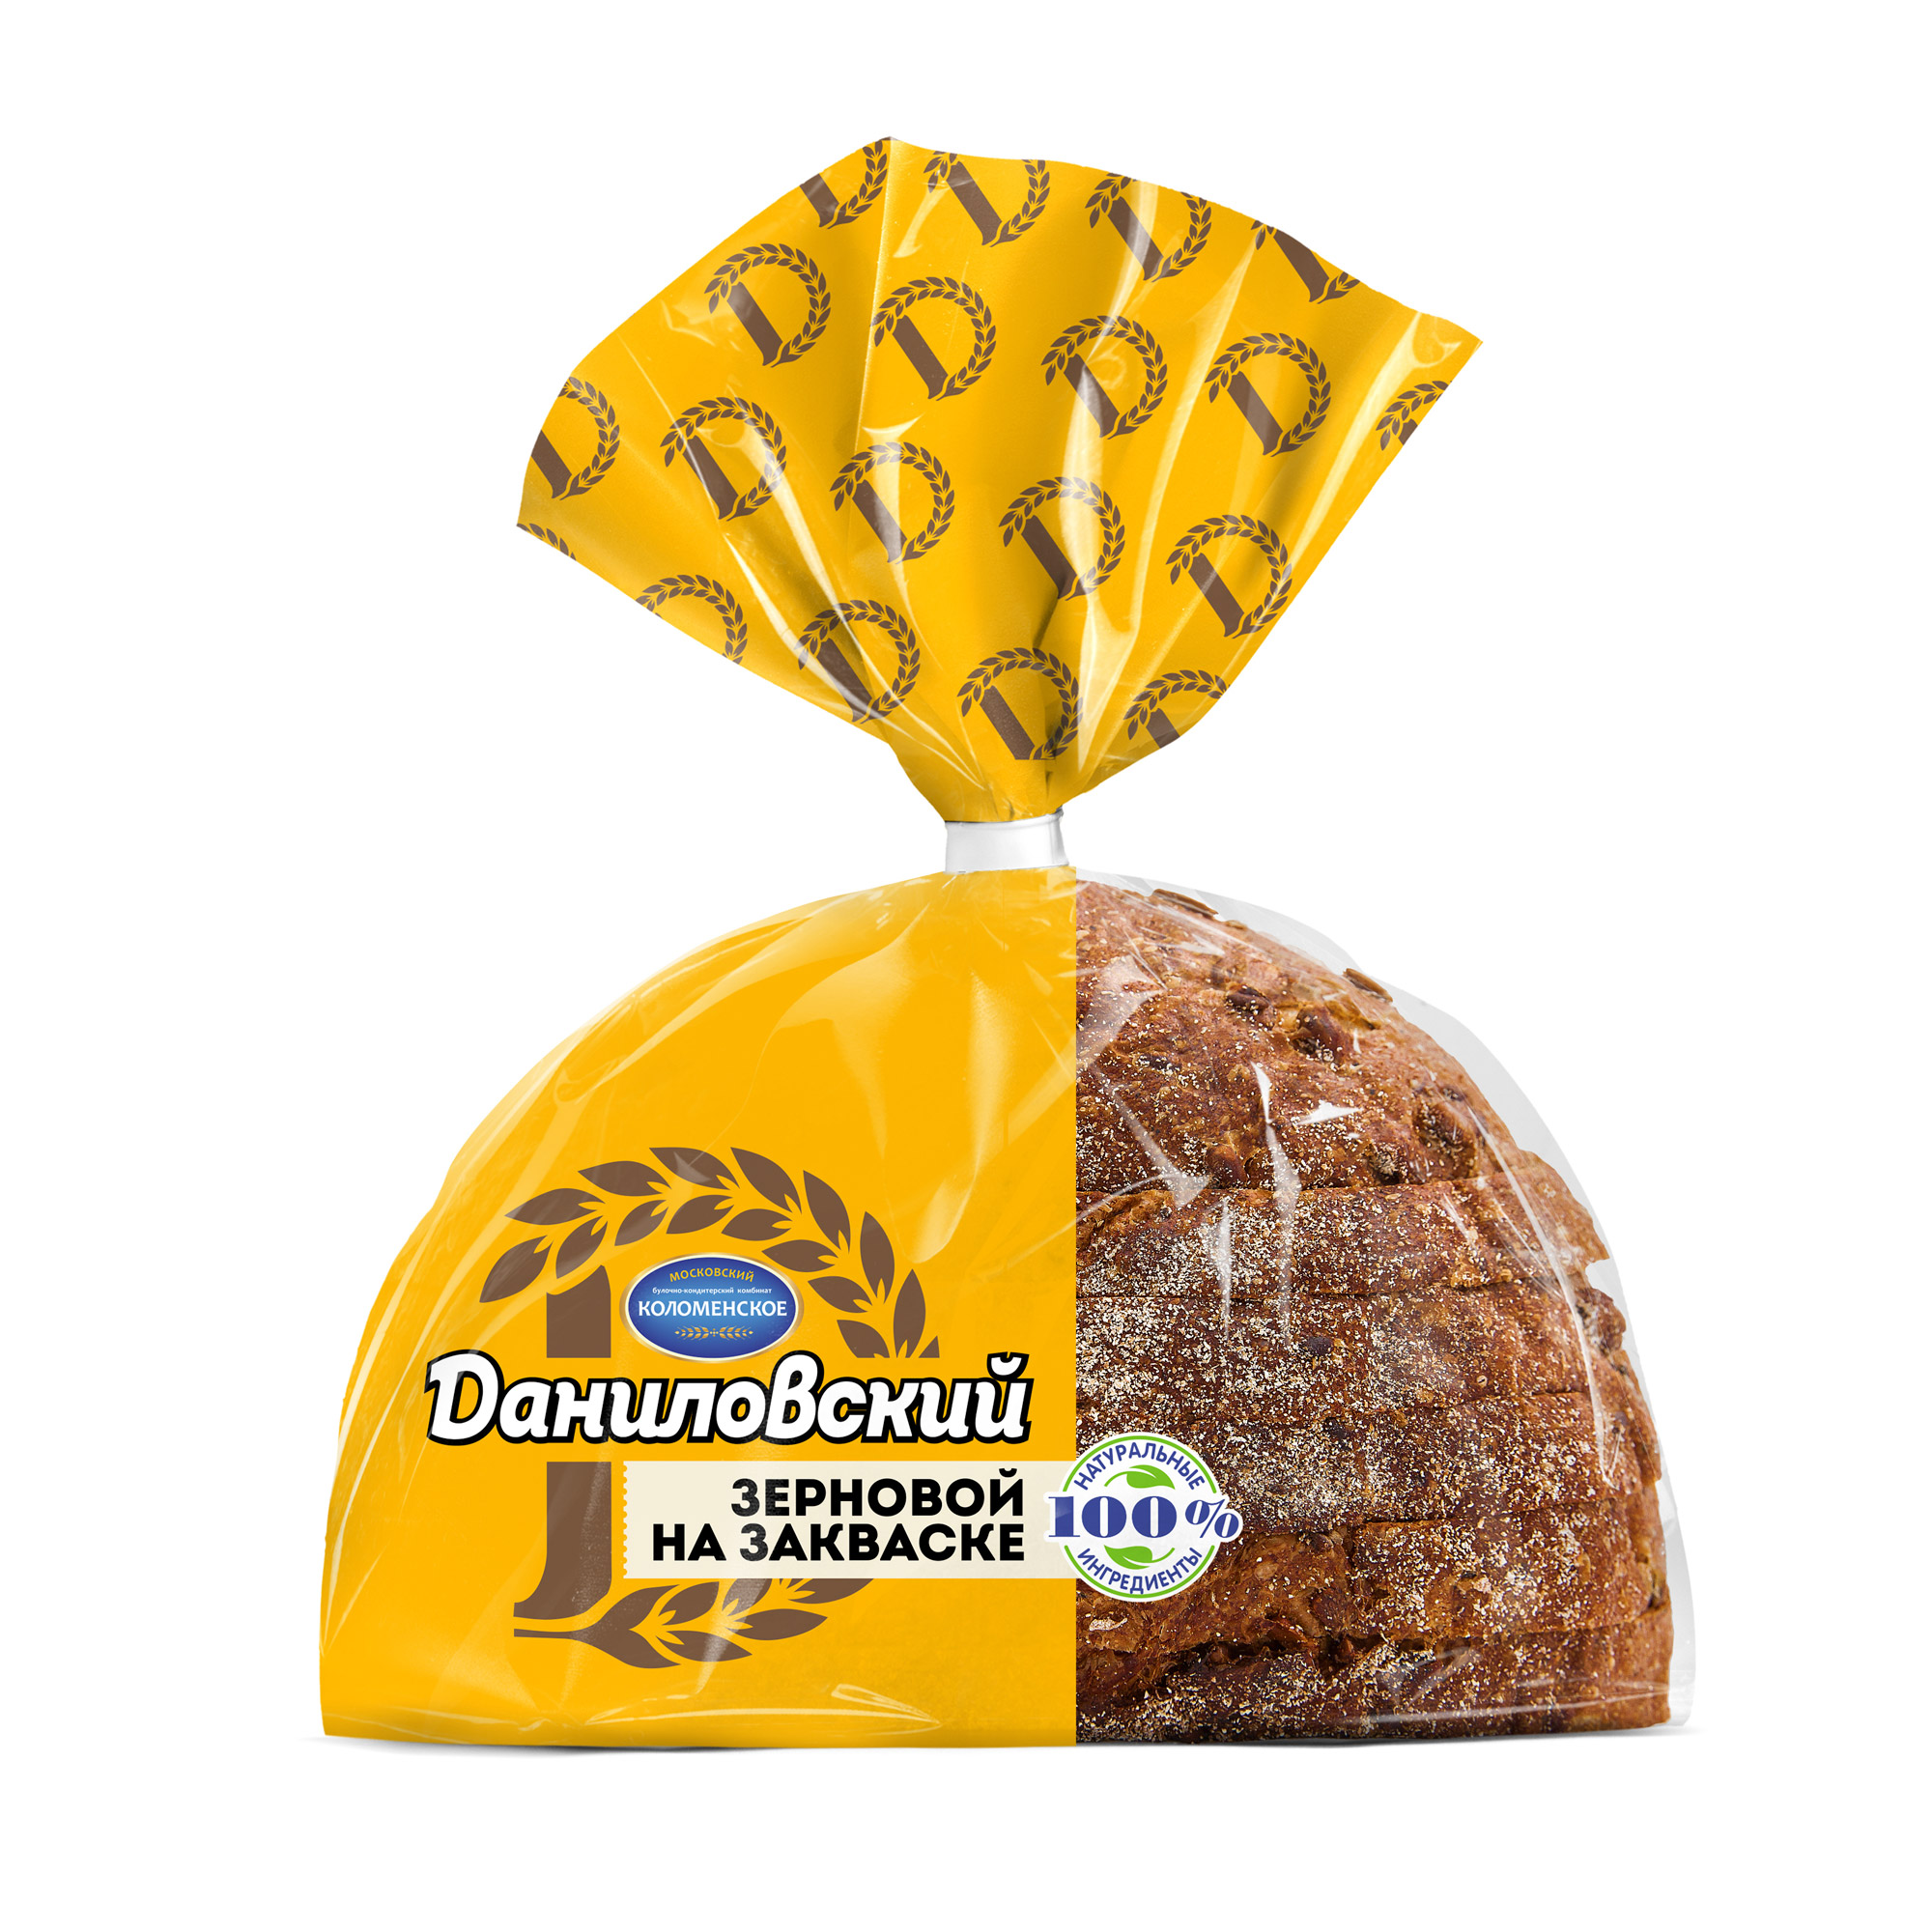 Хлеб Коломенский Даниловский зерновой на закваске 300 г - фото 1